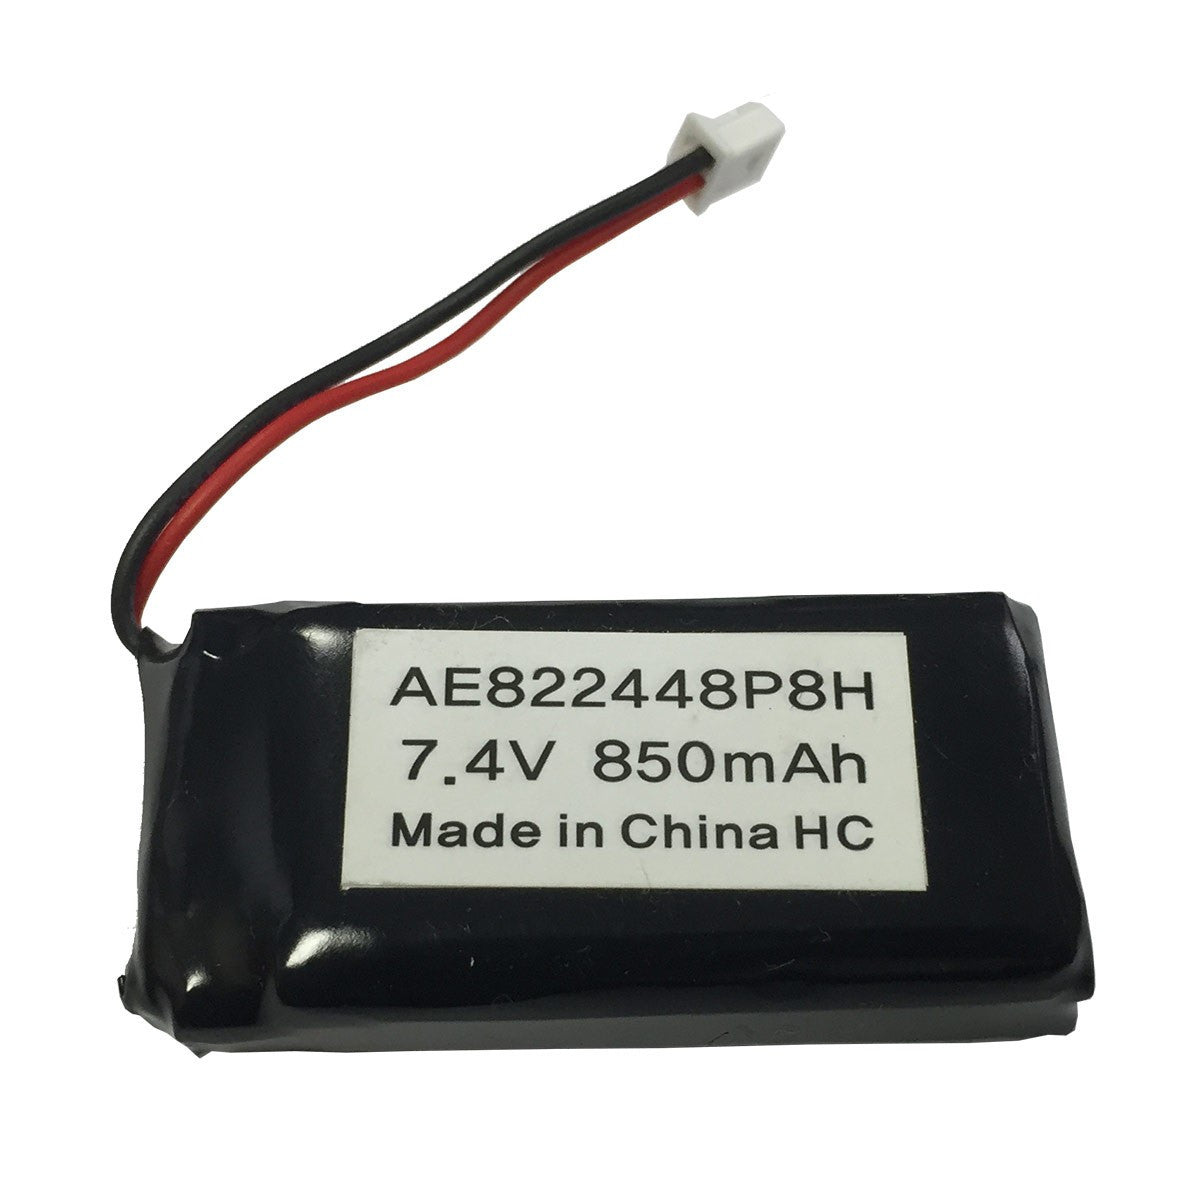 Dogtra Bp74te Transmitter Battery For Edge-rt And Edge